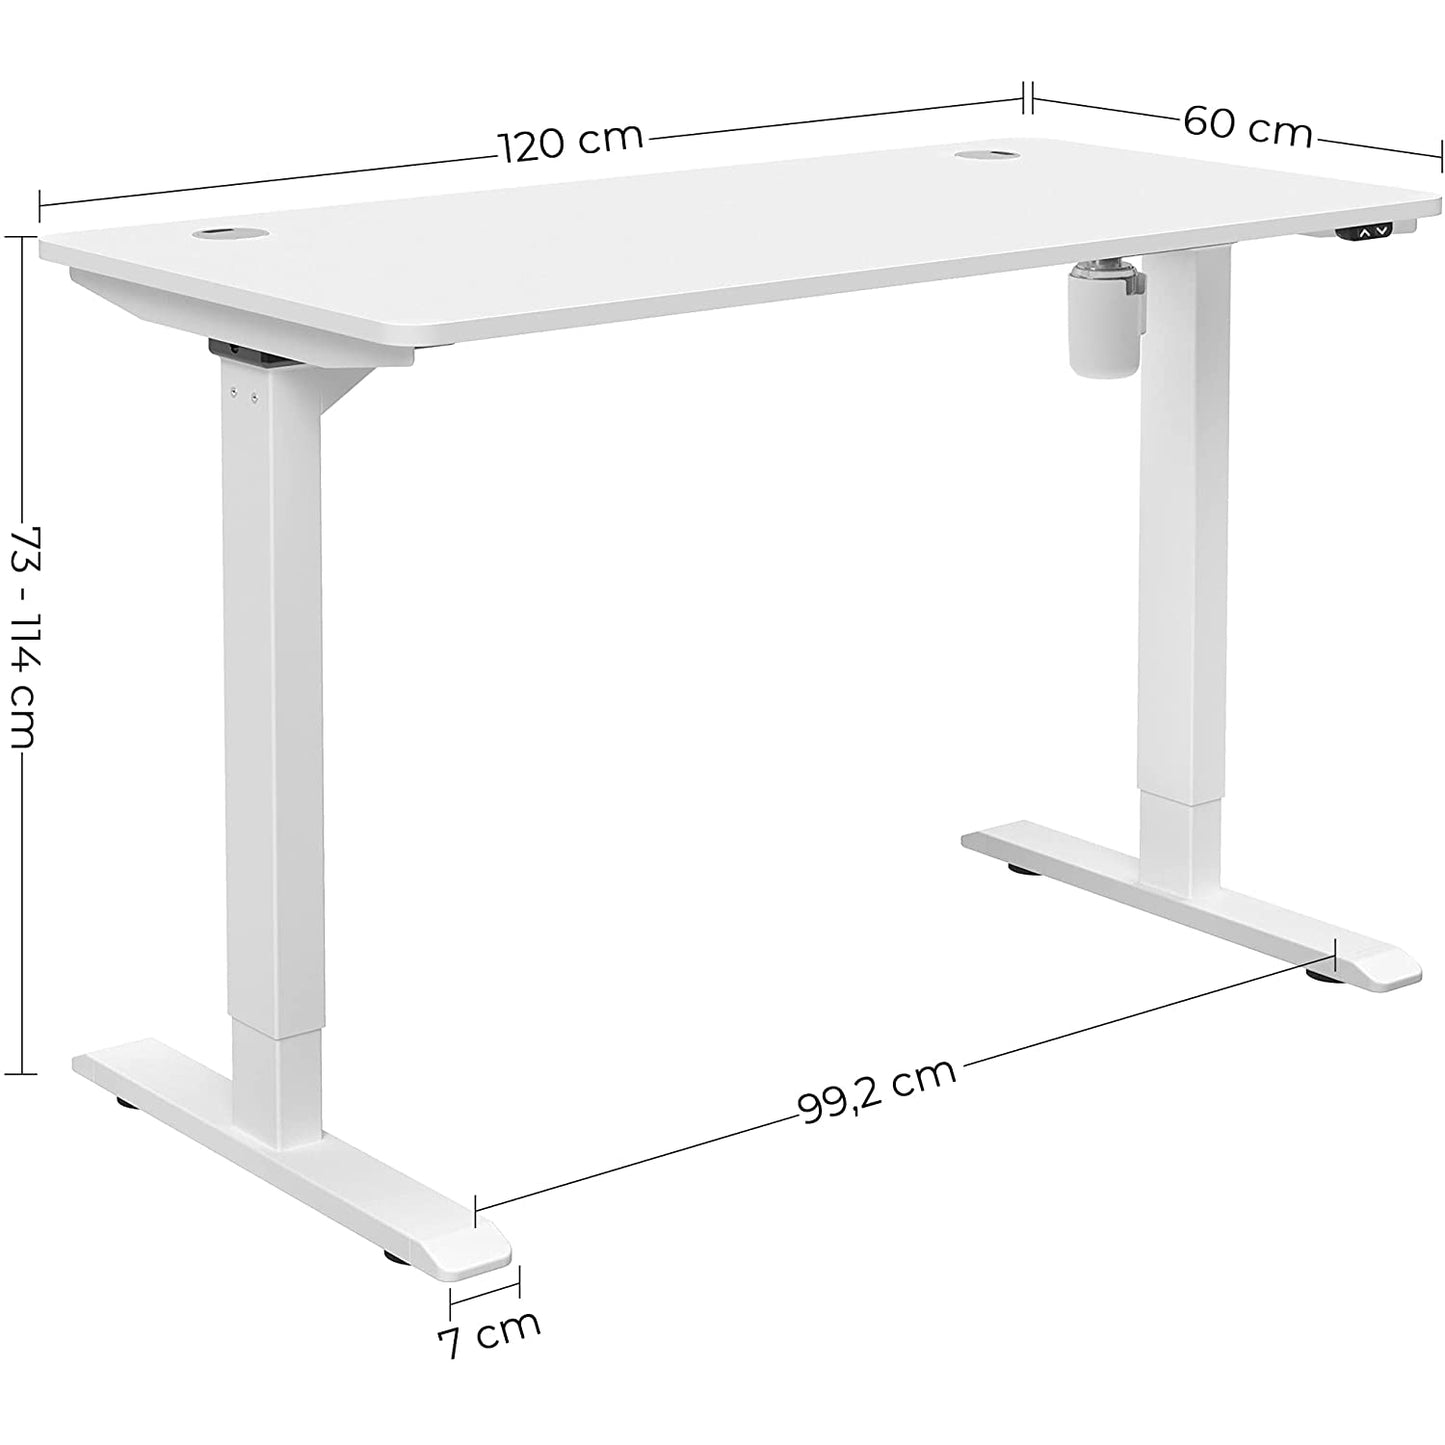 Bureau Nancy's Gaskiers - Hauteur réglable - Table assis-debout - Automatique - Gestion des câbles - Table de bureau - Noir/Blanc - MDF - Acier - 120 x 60 x (73-114)